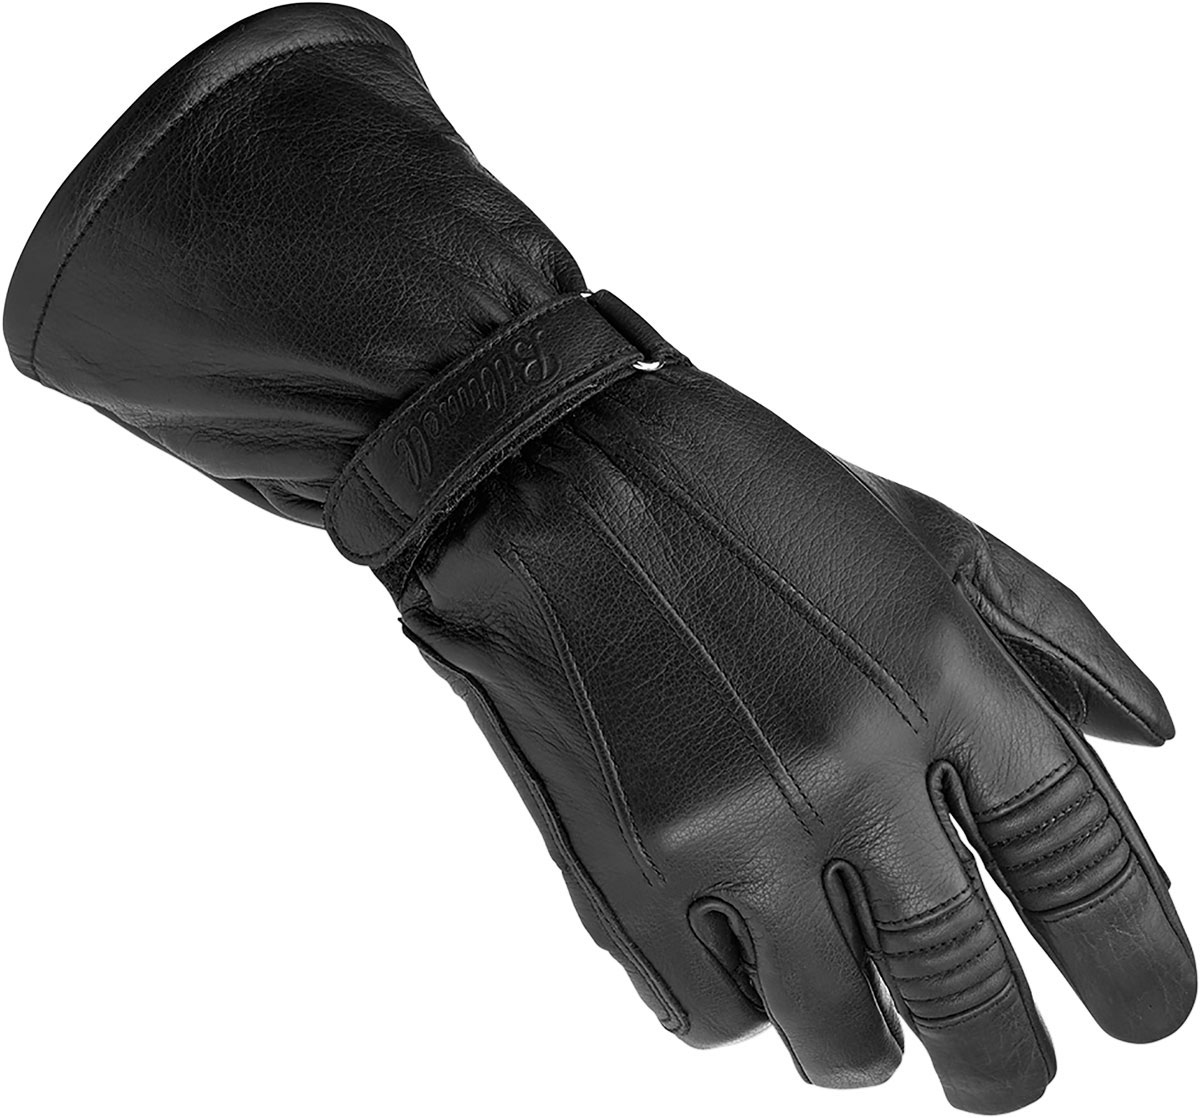 BILTWELL Long Gauntlet Leather Motorcycle Gloves (Black) L (Large) | eBay